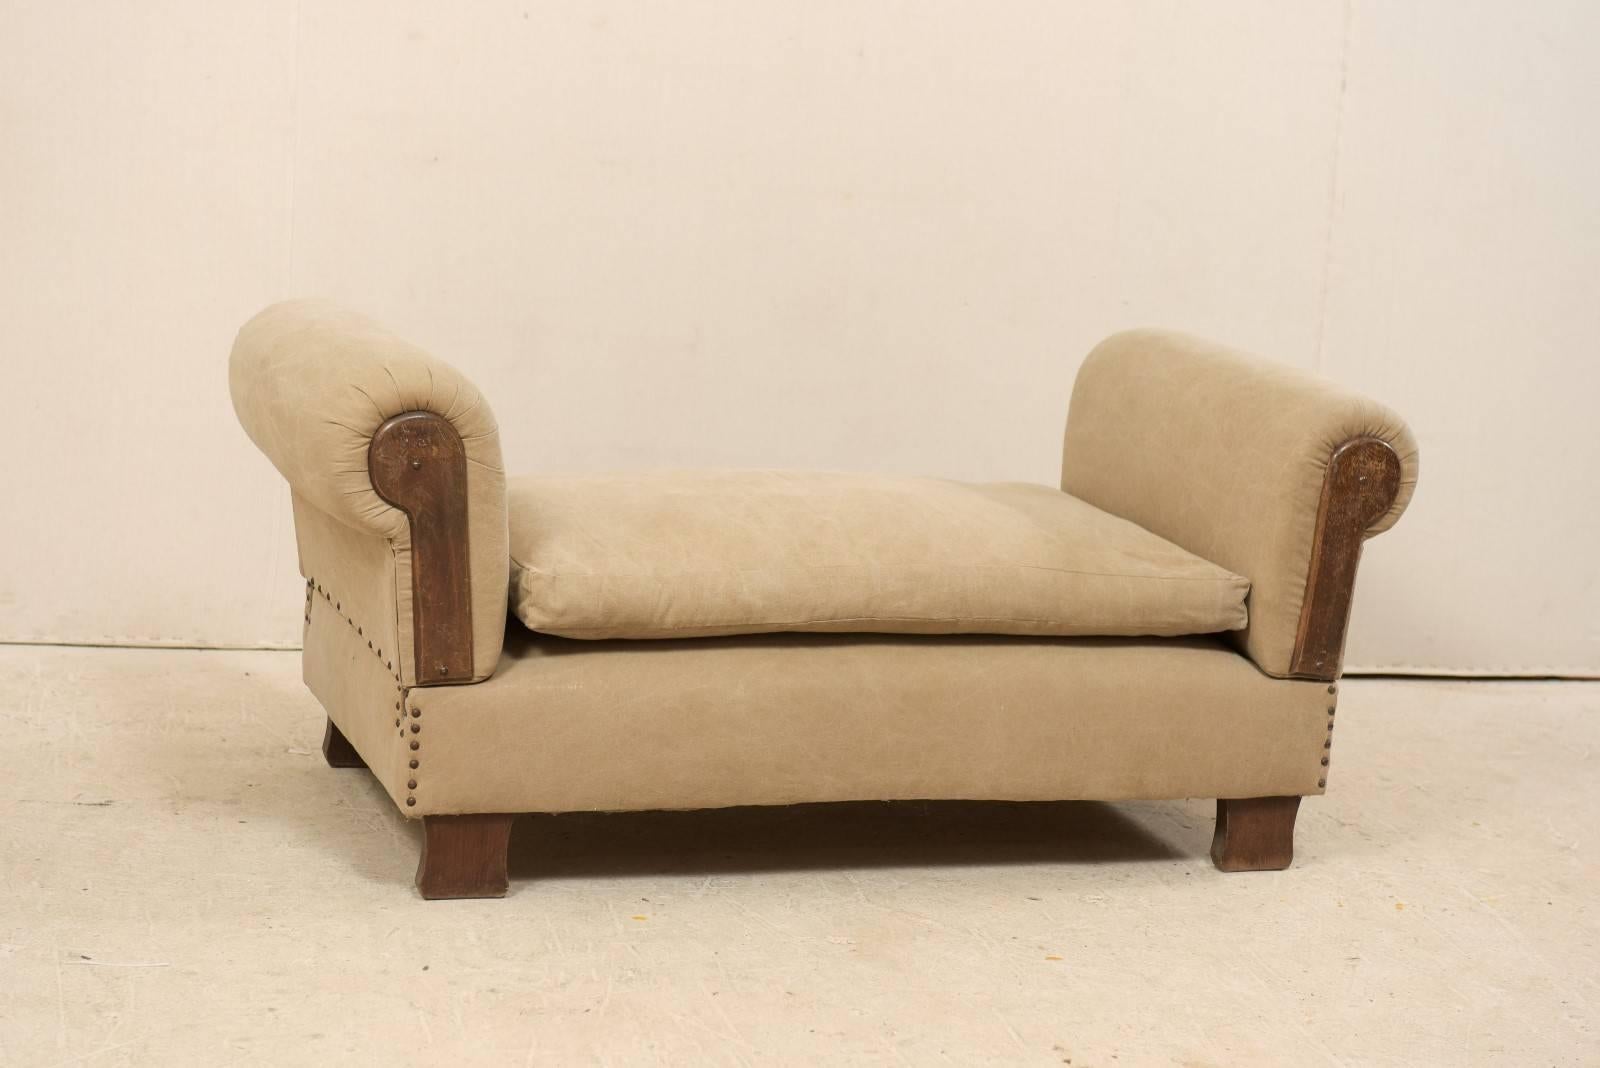 Un lit de jour français des années 1920-1930. Ce canapé français ancien est doté d'accoudoirs en forme de goutte d'eau à chaque extrémité, ce qui permet de le transformer en chaise ou en lit de jour. Les bras présentent des plis arrondis avec des